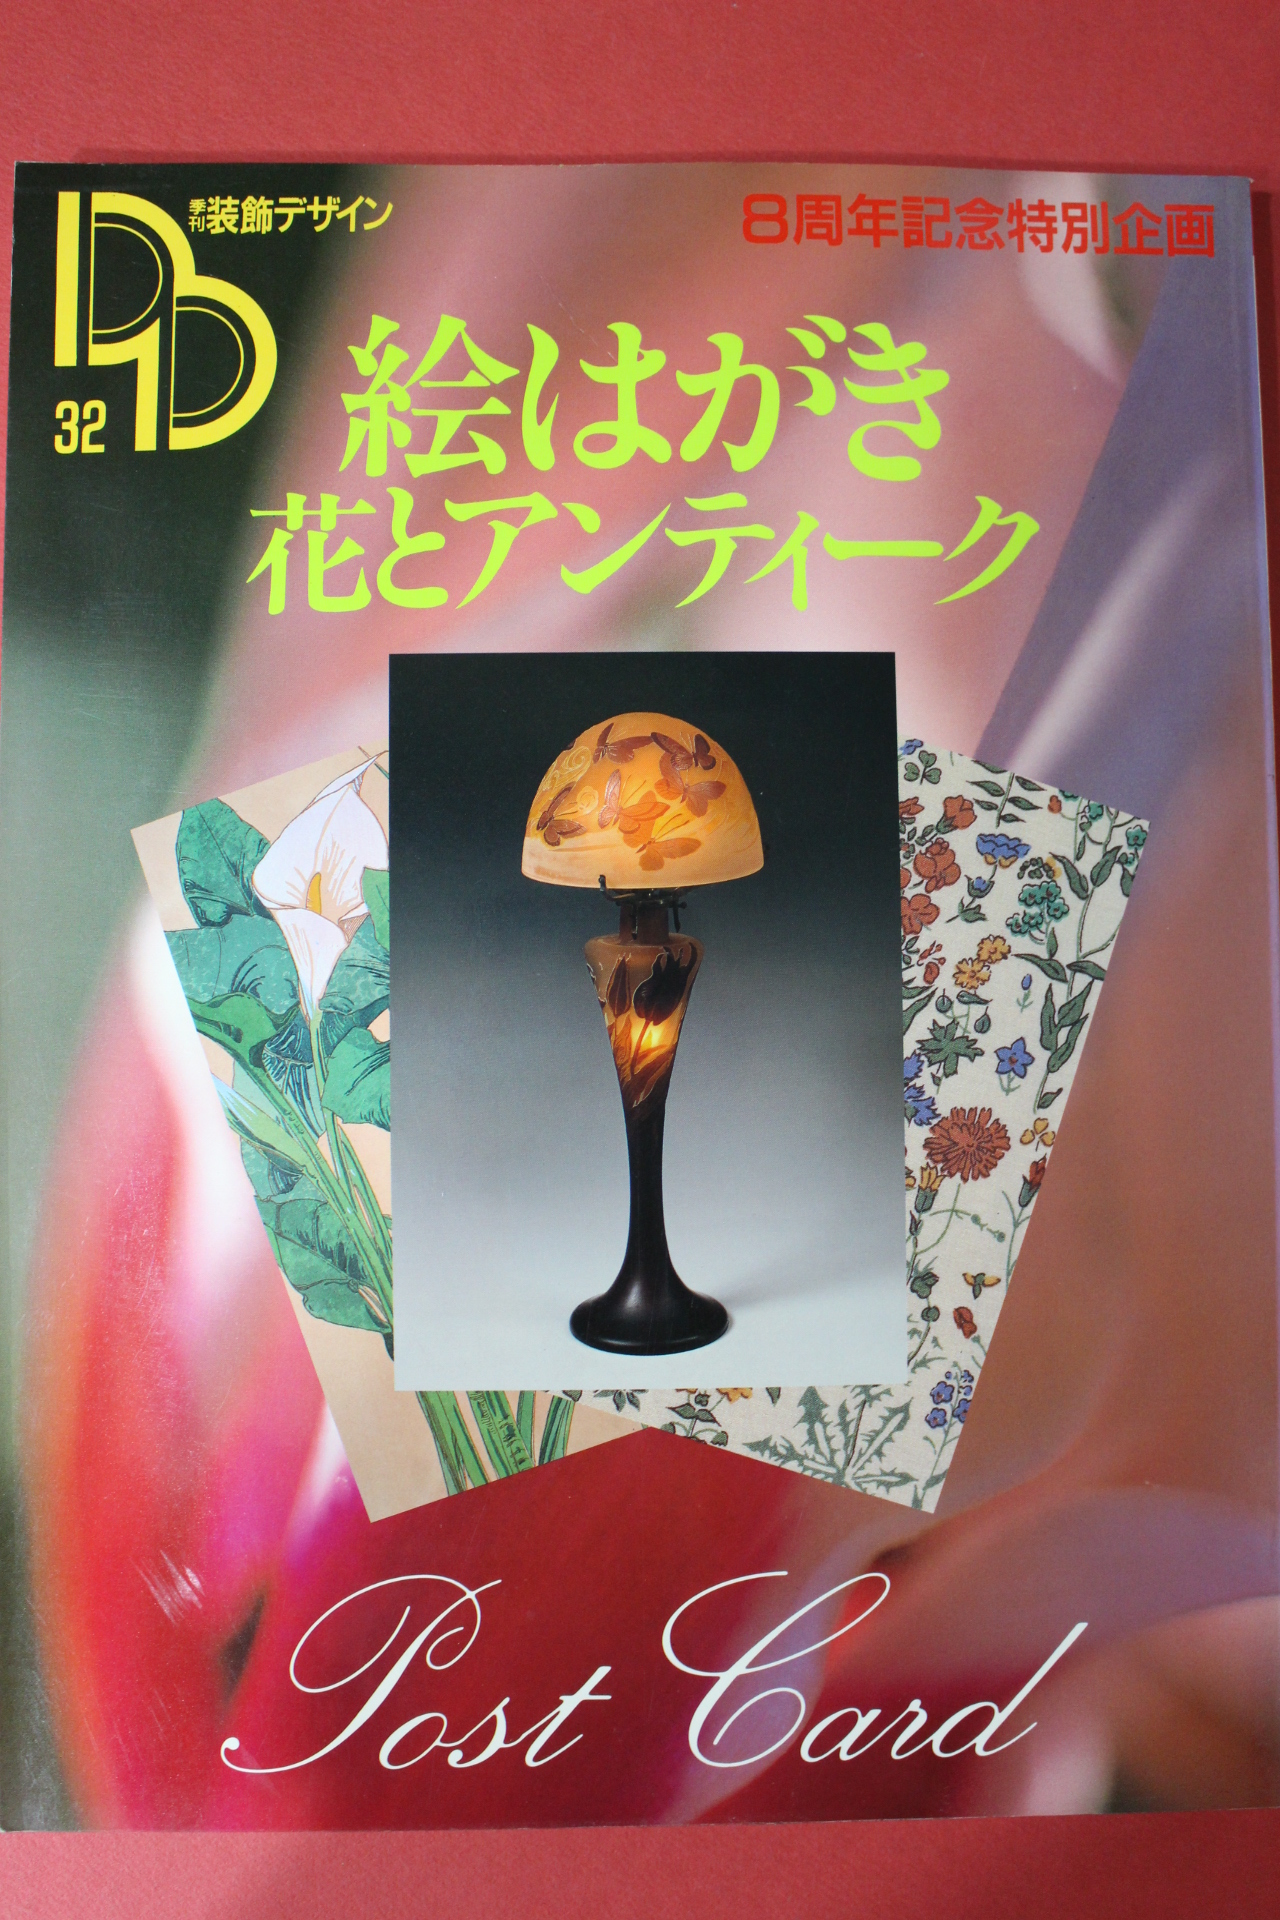 1990년 일본잡지